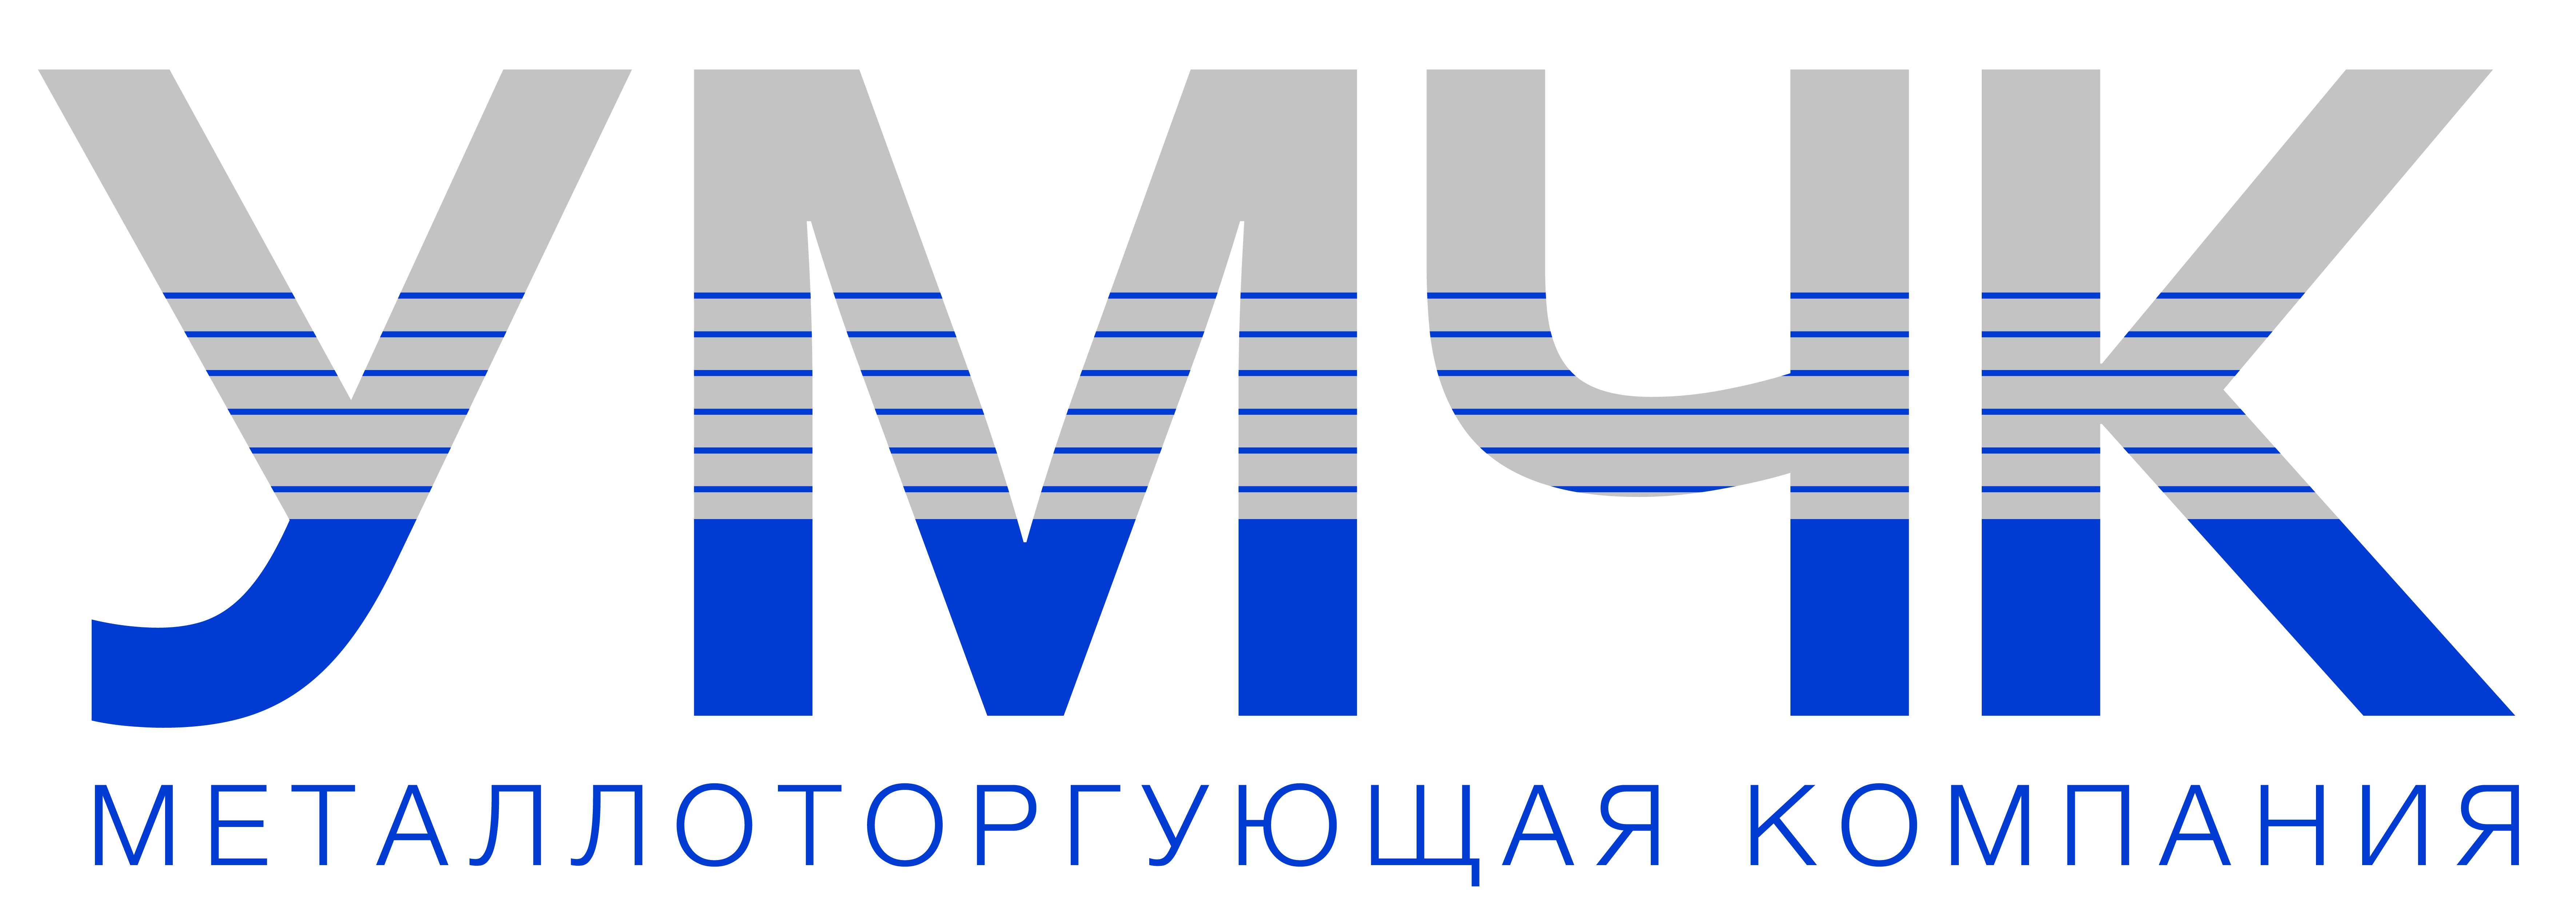 Логотип компании УМК